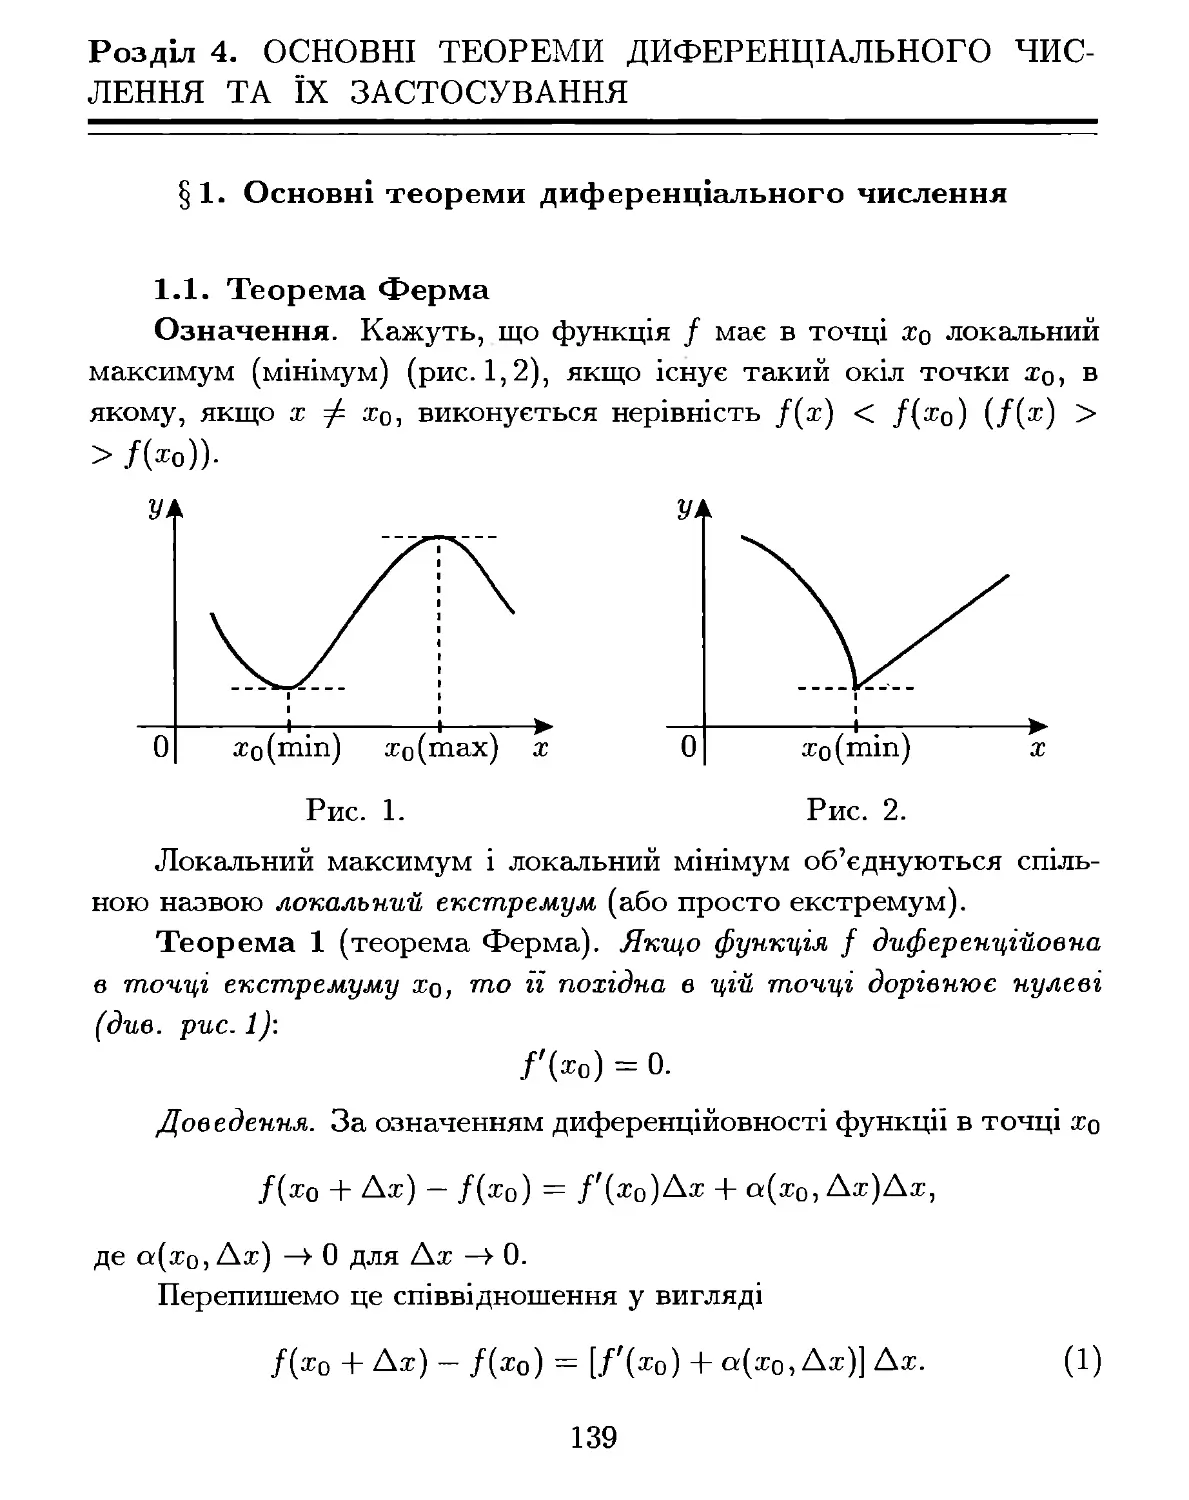 Розділ 4. Основні теореми диференціального числення та їх застосування